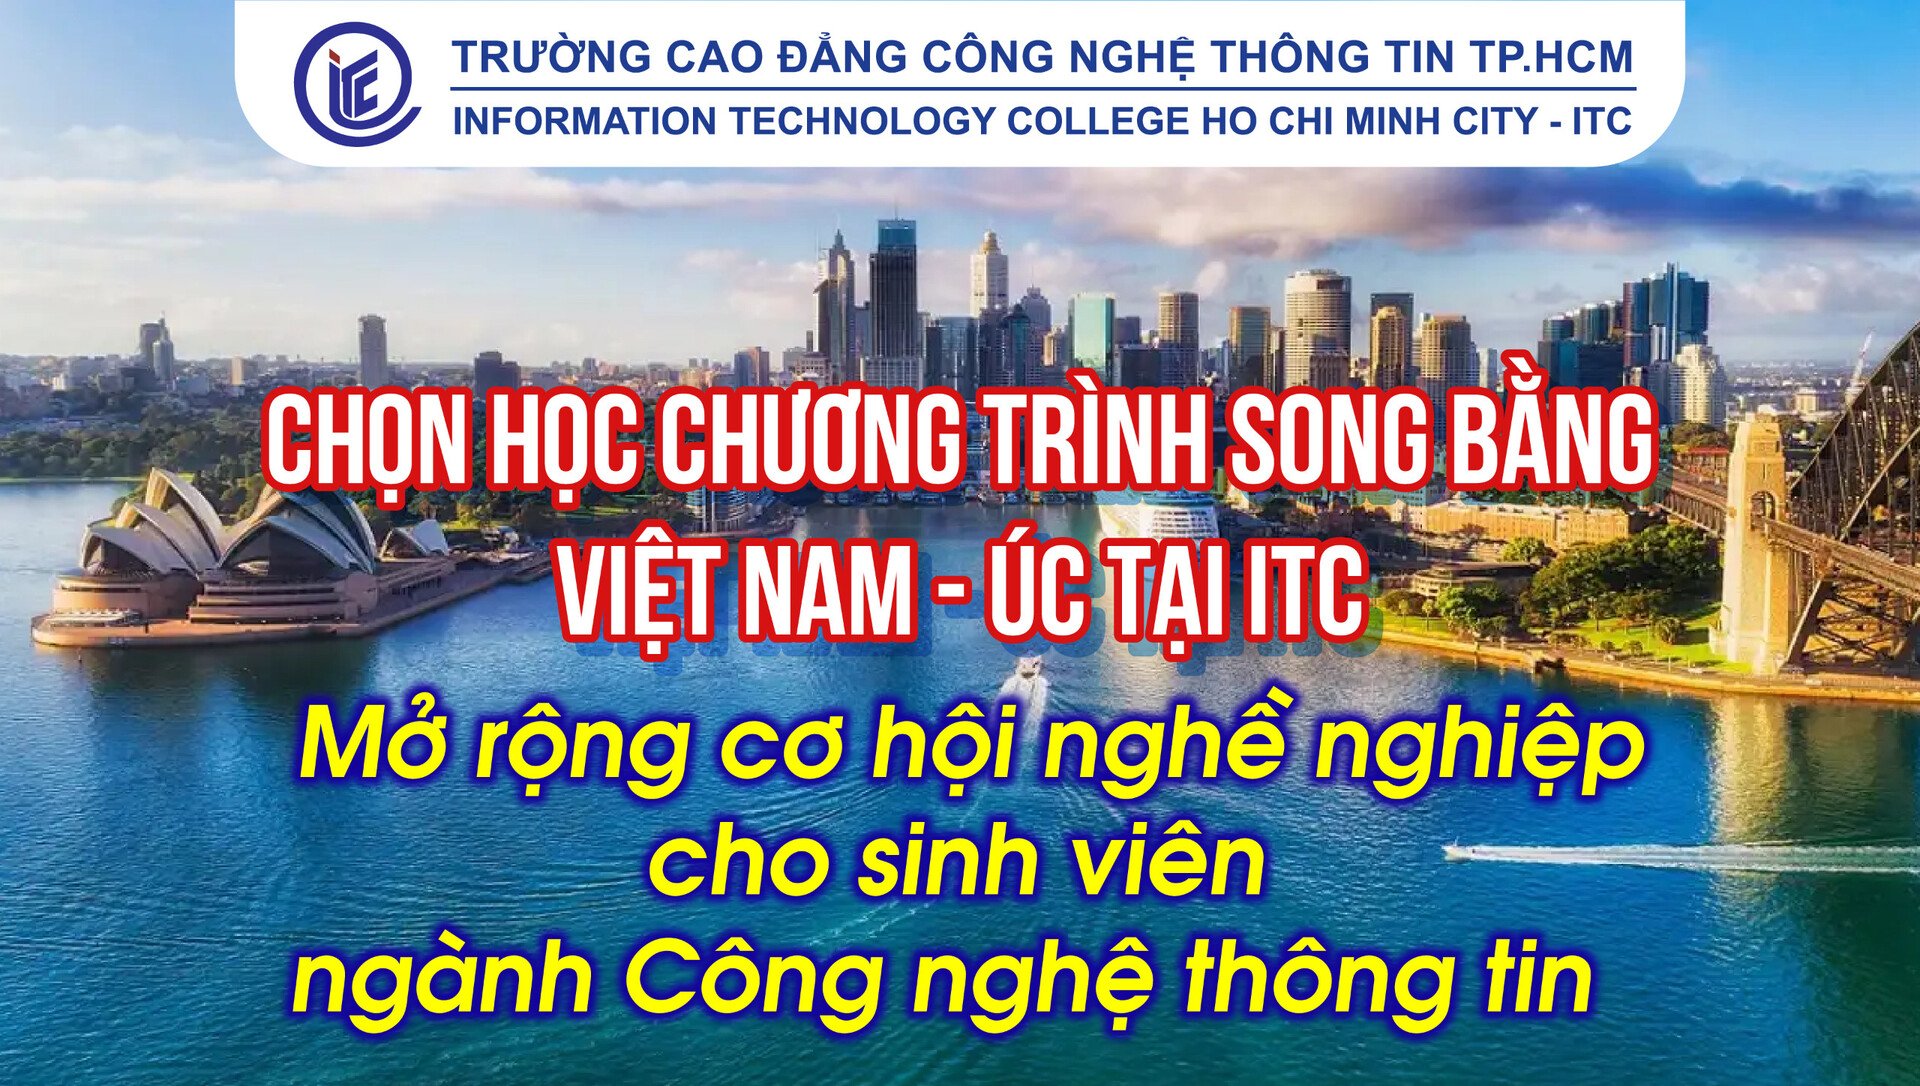 Chọn học chương trình song bằng Việt Nam - Úc tại ITC: Mở rộng cơ hội nghề nghiệp cho sinh viên ngành Công nghệ thông tin